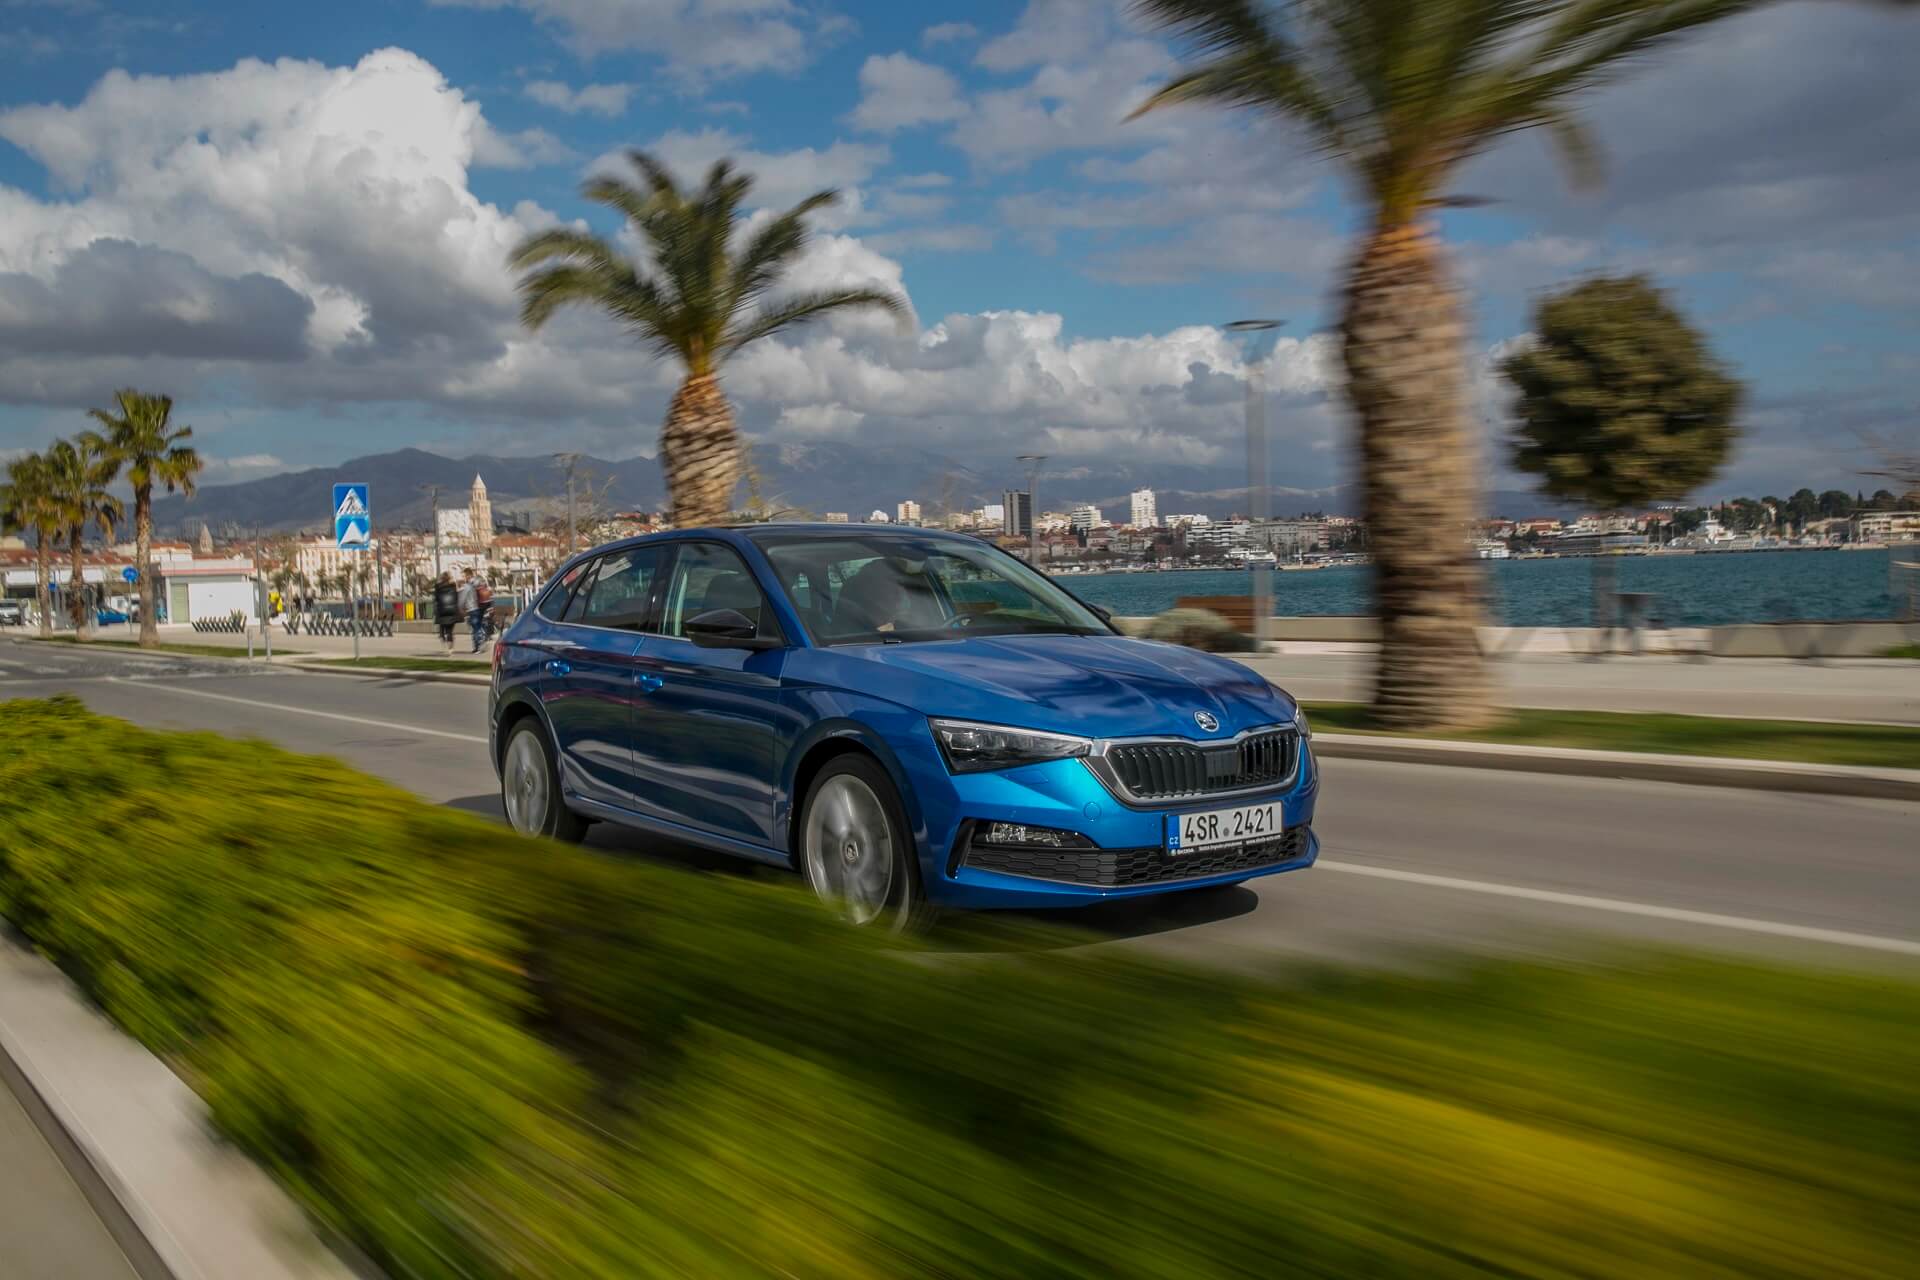 Σε τι τιμή ήρθε στην Ελλάδα το νέο Škoda Scala;